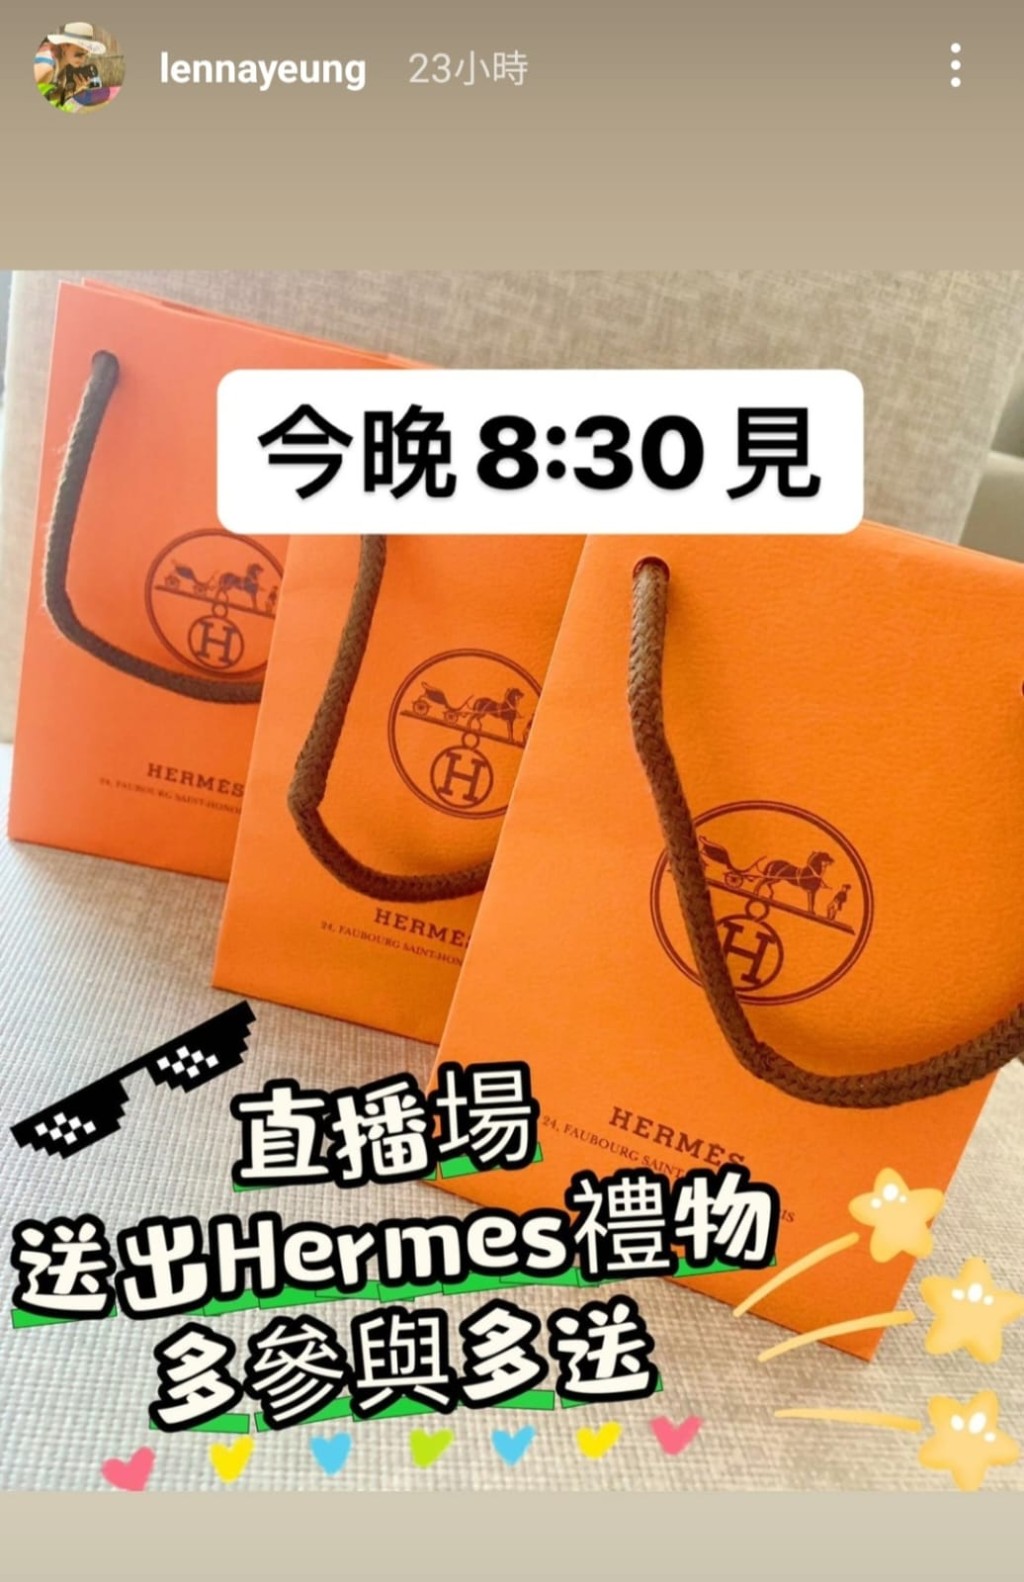 楊卓娜昨日在限時動態晒出三袋Hermès，表示是直播送的禮物。